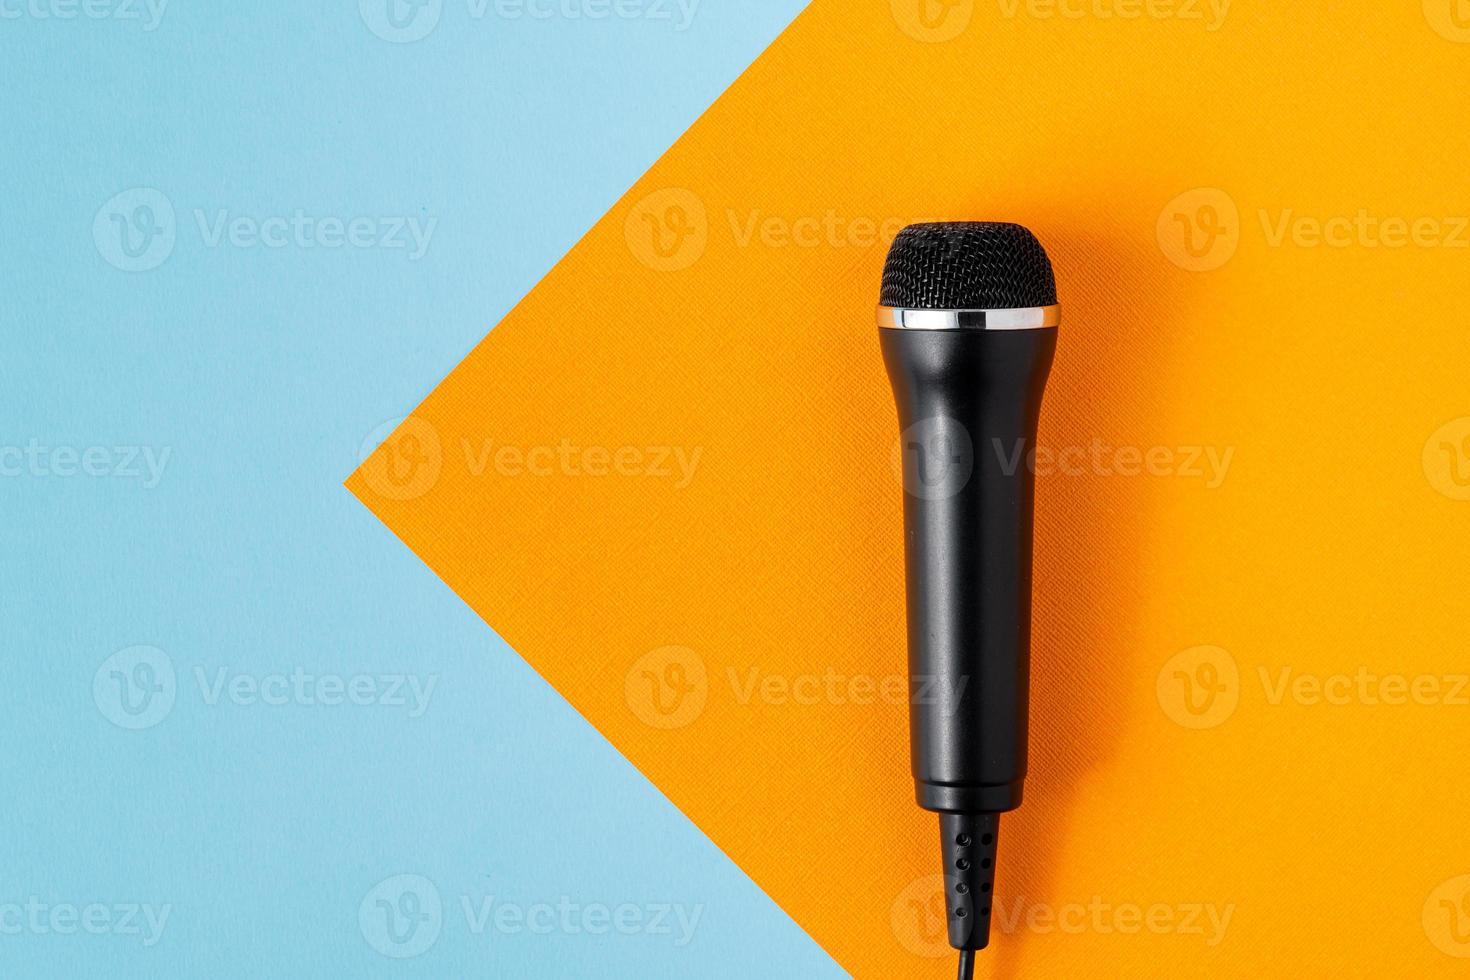 microfone de cabo em design de fundo colorido turquesa e laranja, sobrecarga, copie o espaço foto